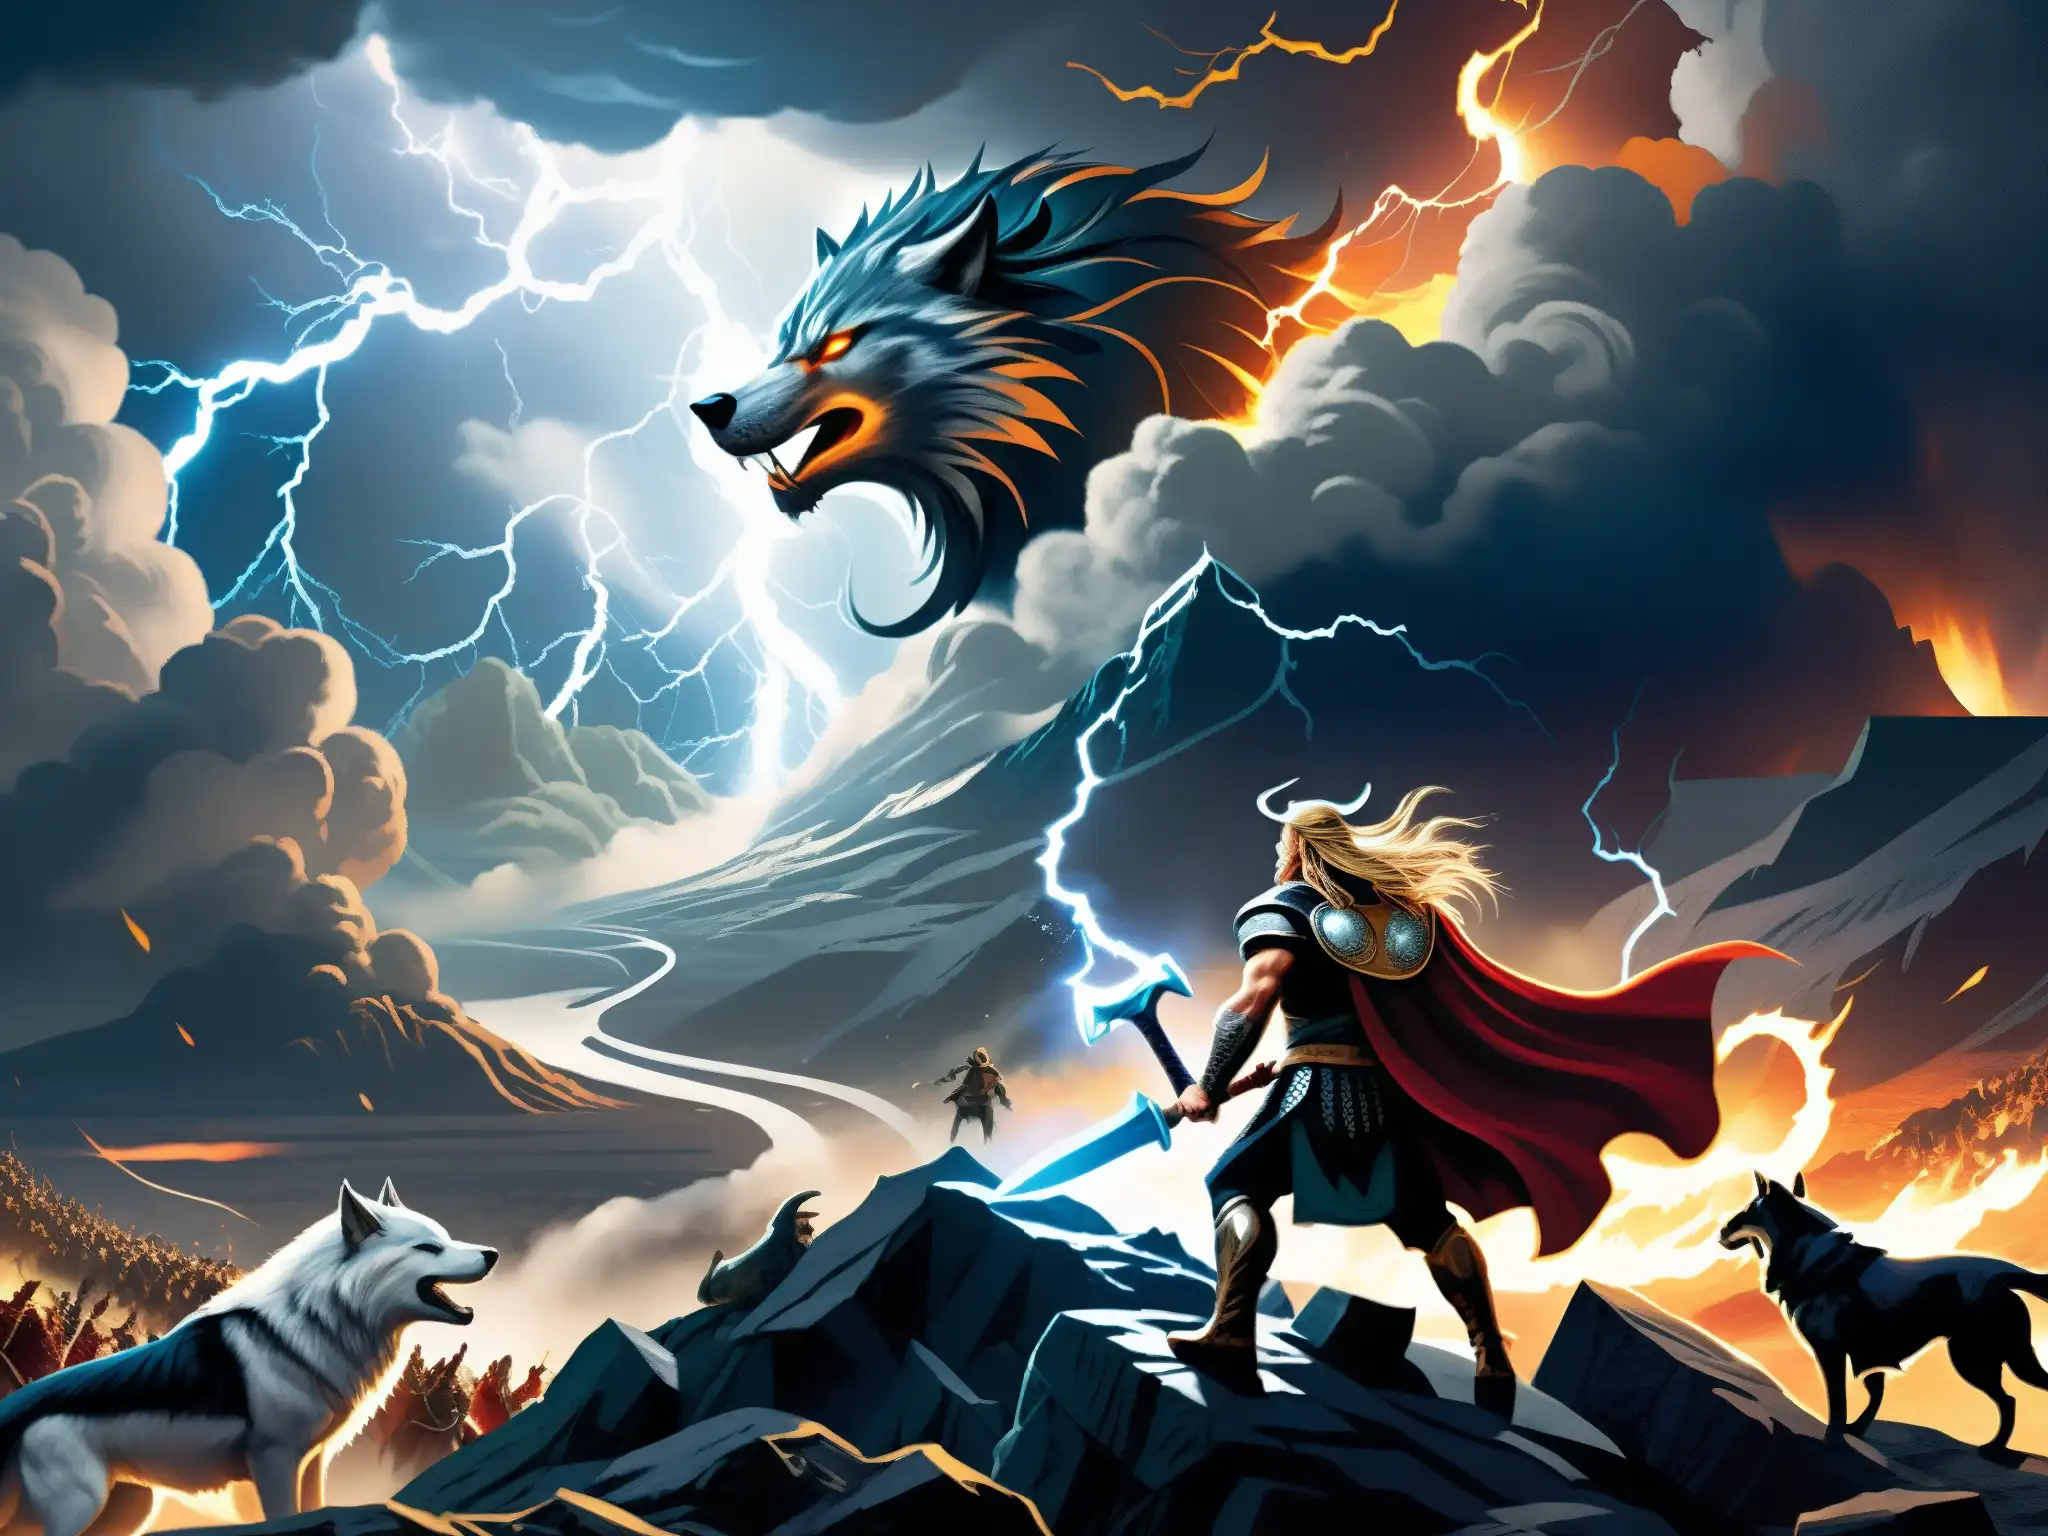 Épica ilustración del Apocalipsis vikingo Ragnarök mito con Odin, Thor, Loki y otros dioses en combate entre nubes de tormenta y criaturas monstruosas